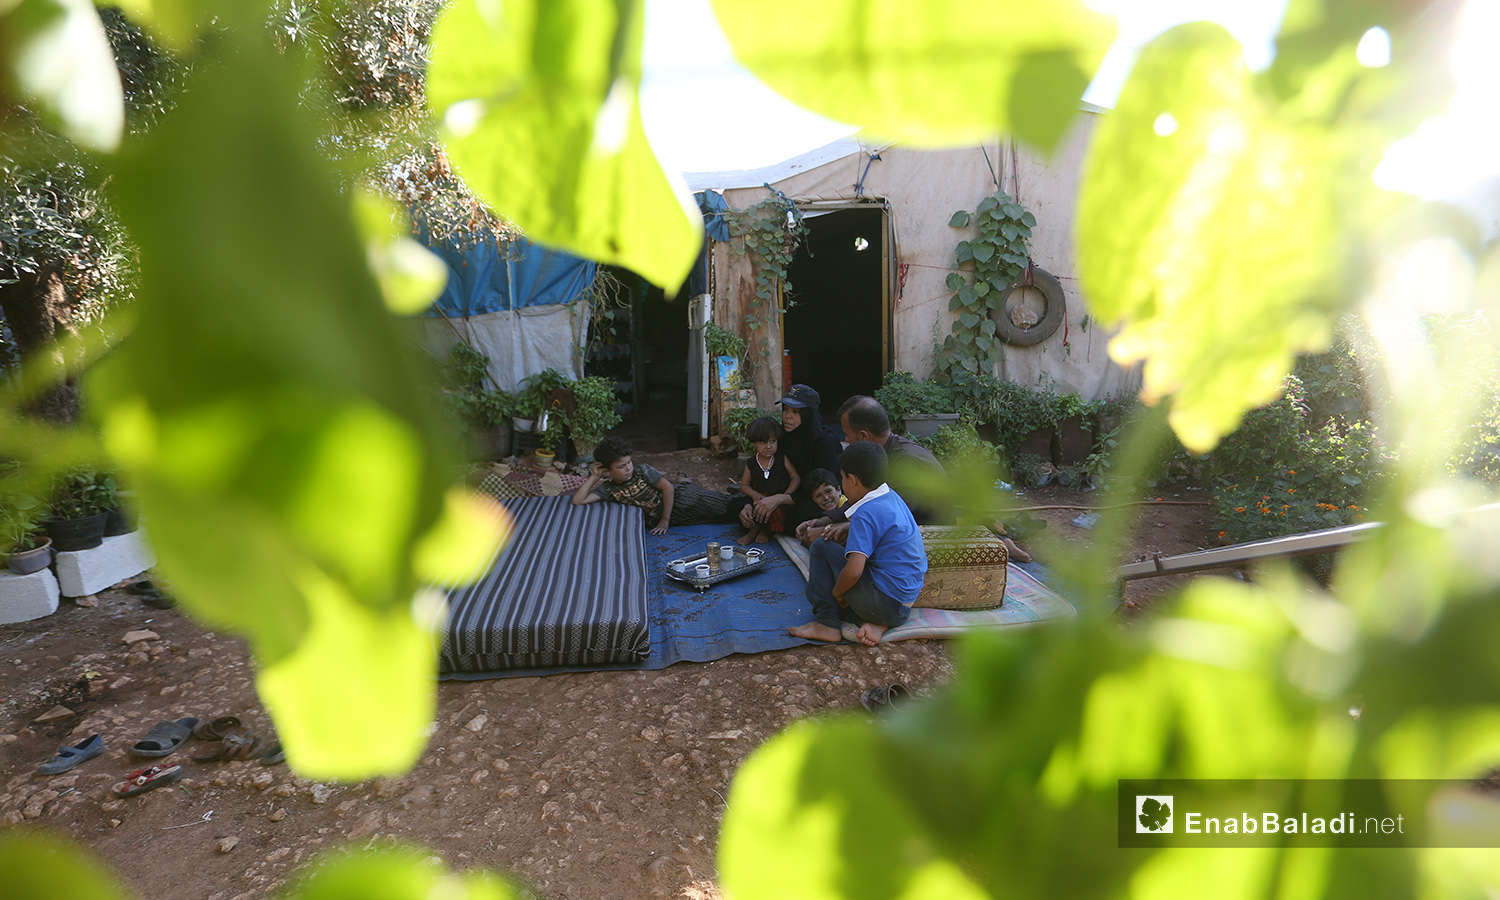 تشارك عائلات مخيم "المطار" حورية بحبها للنباتات والزراعة ويفضلون الجلوس بينها خارج الخيام - تشرين الأول 2020 (عنب بلدي/ يوسف غريبي)